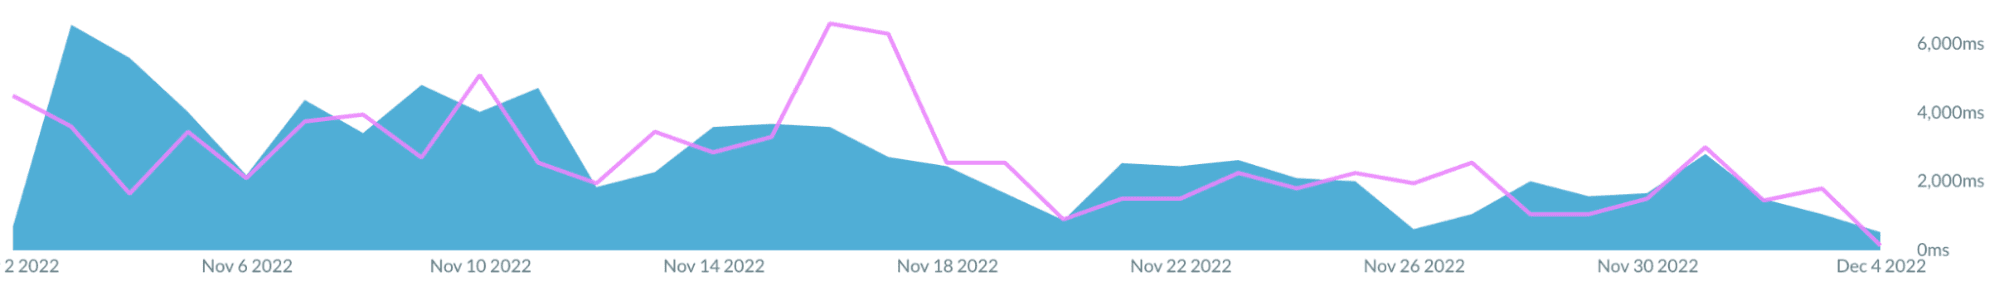 Captura de pantalla de un gráfico publicado en Akamai mPulse que muestra una disminución de la TBT durante el transcurso de aproximadamente un mes